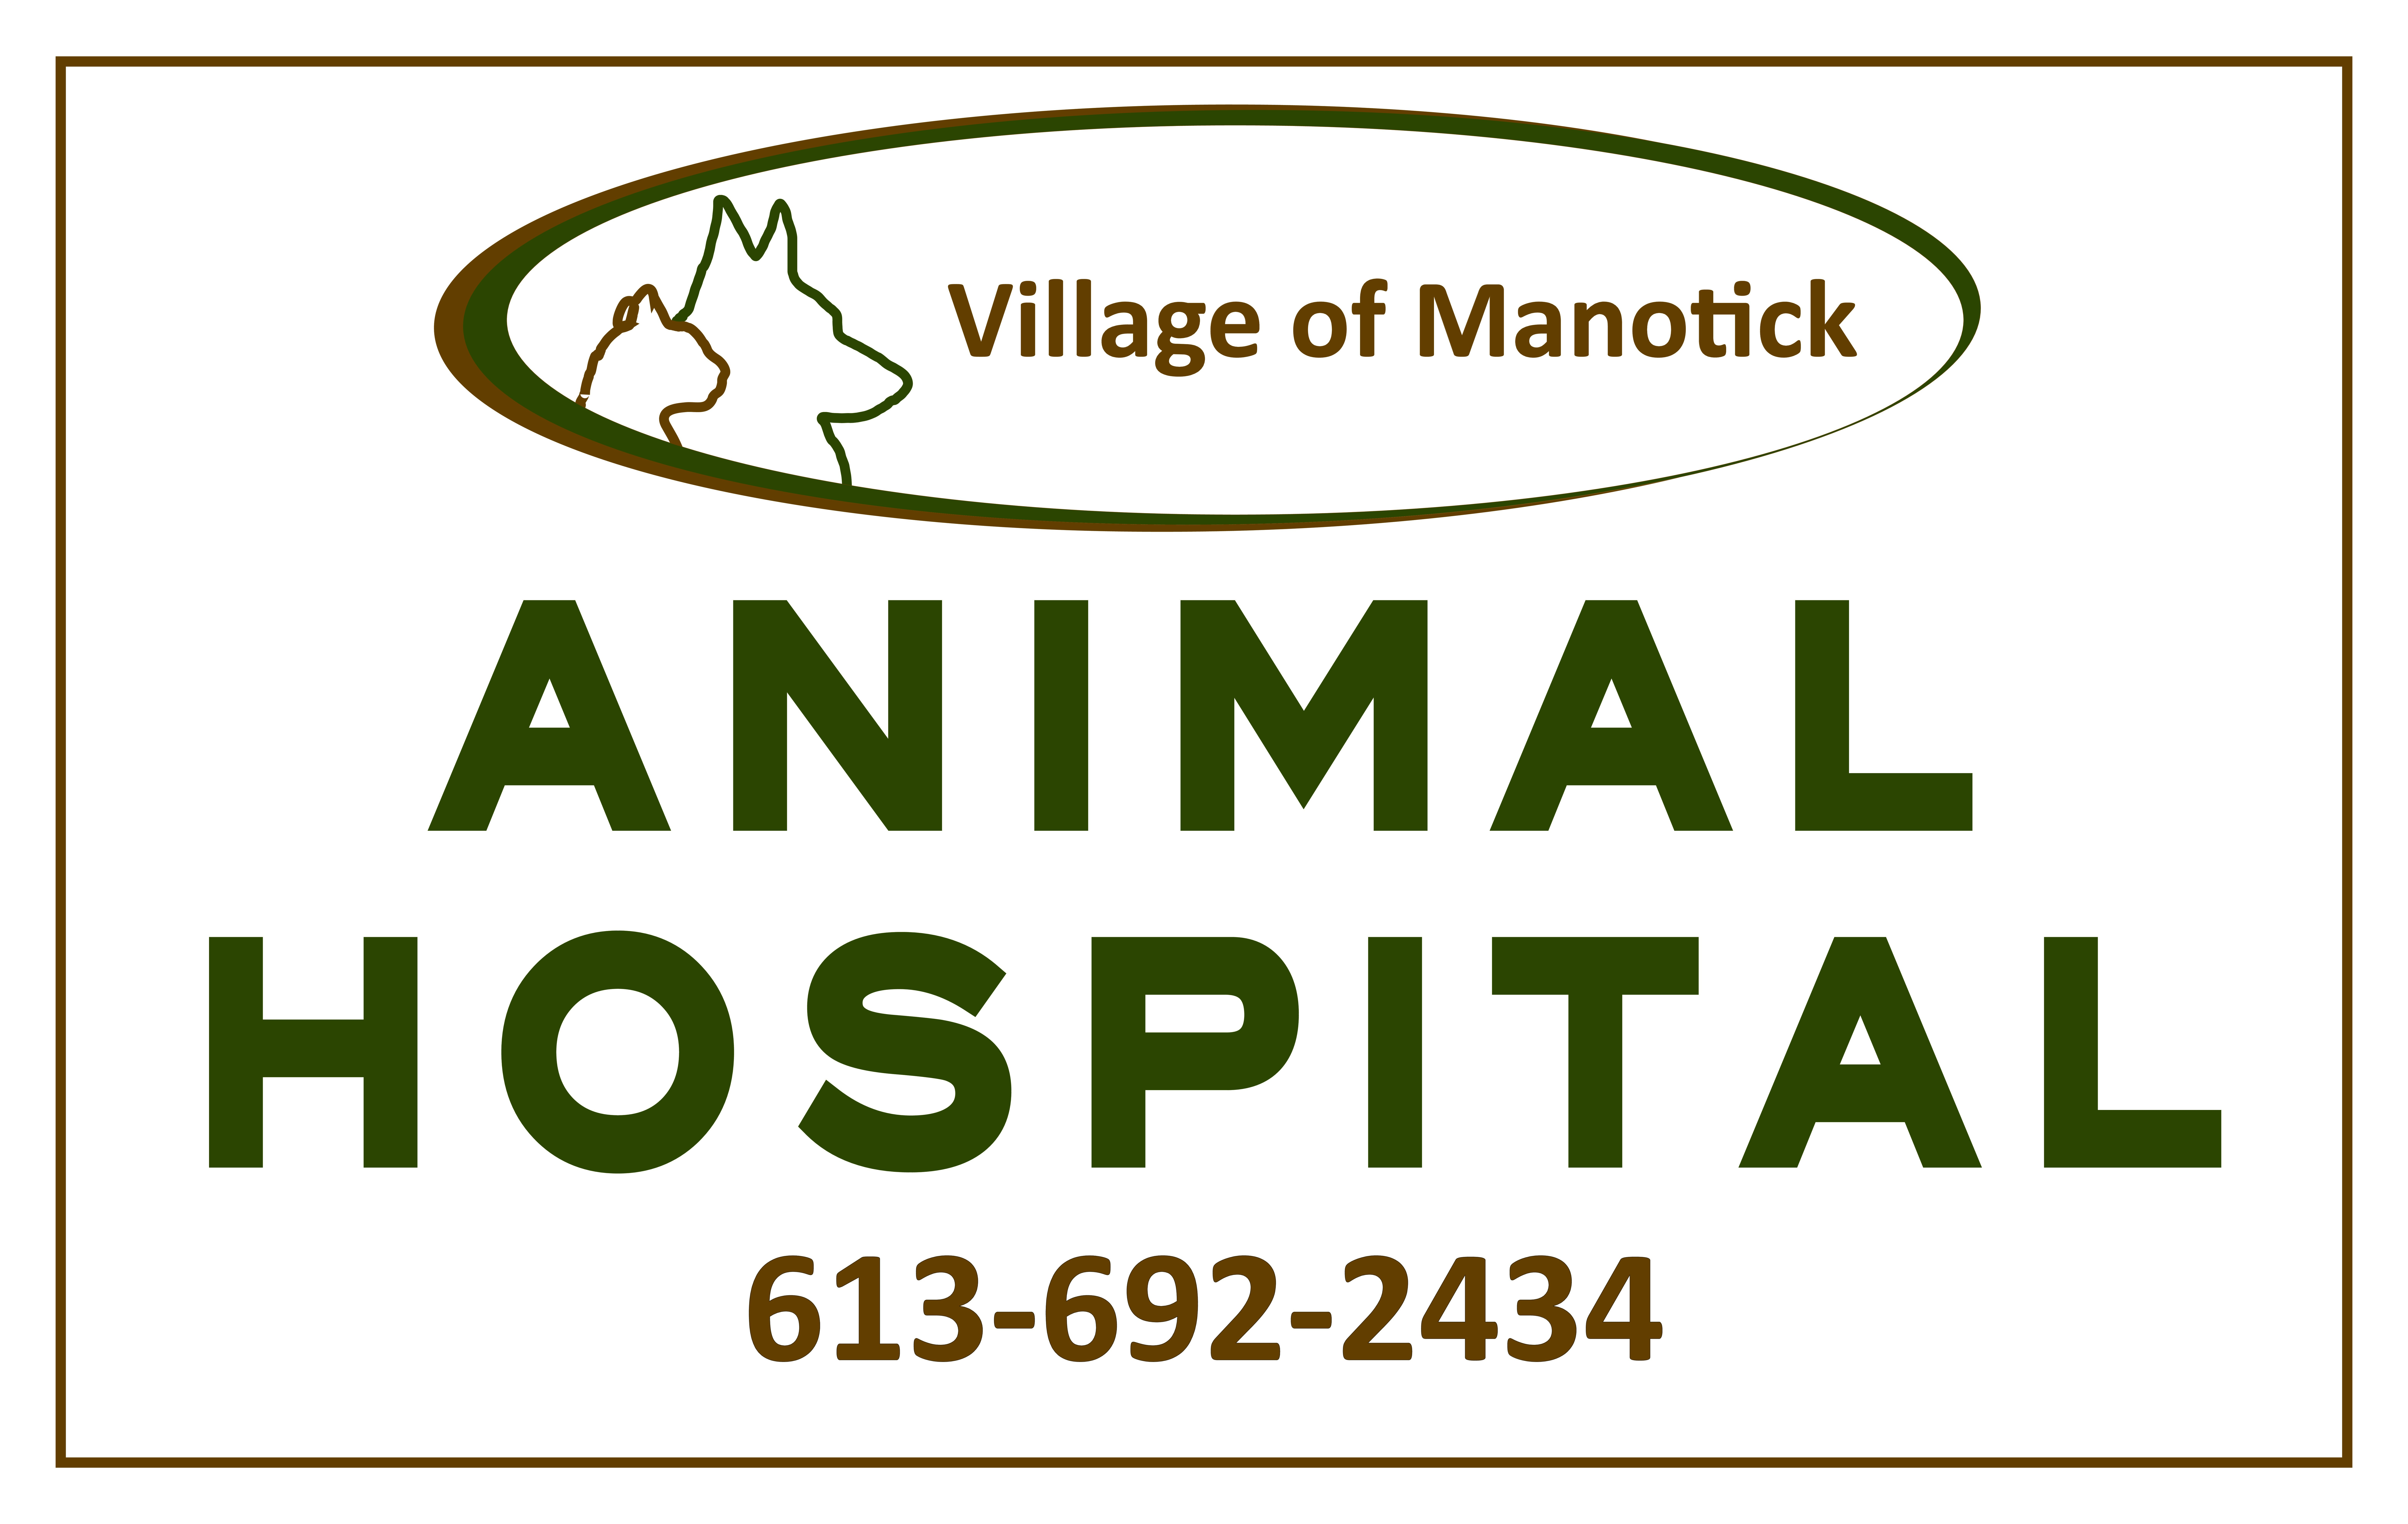 Village of Manotick Animal Hospital logo - Business in Manotick